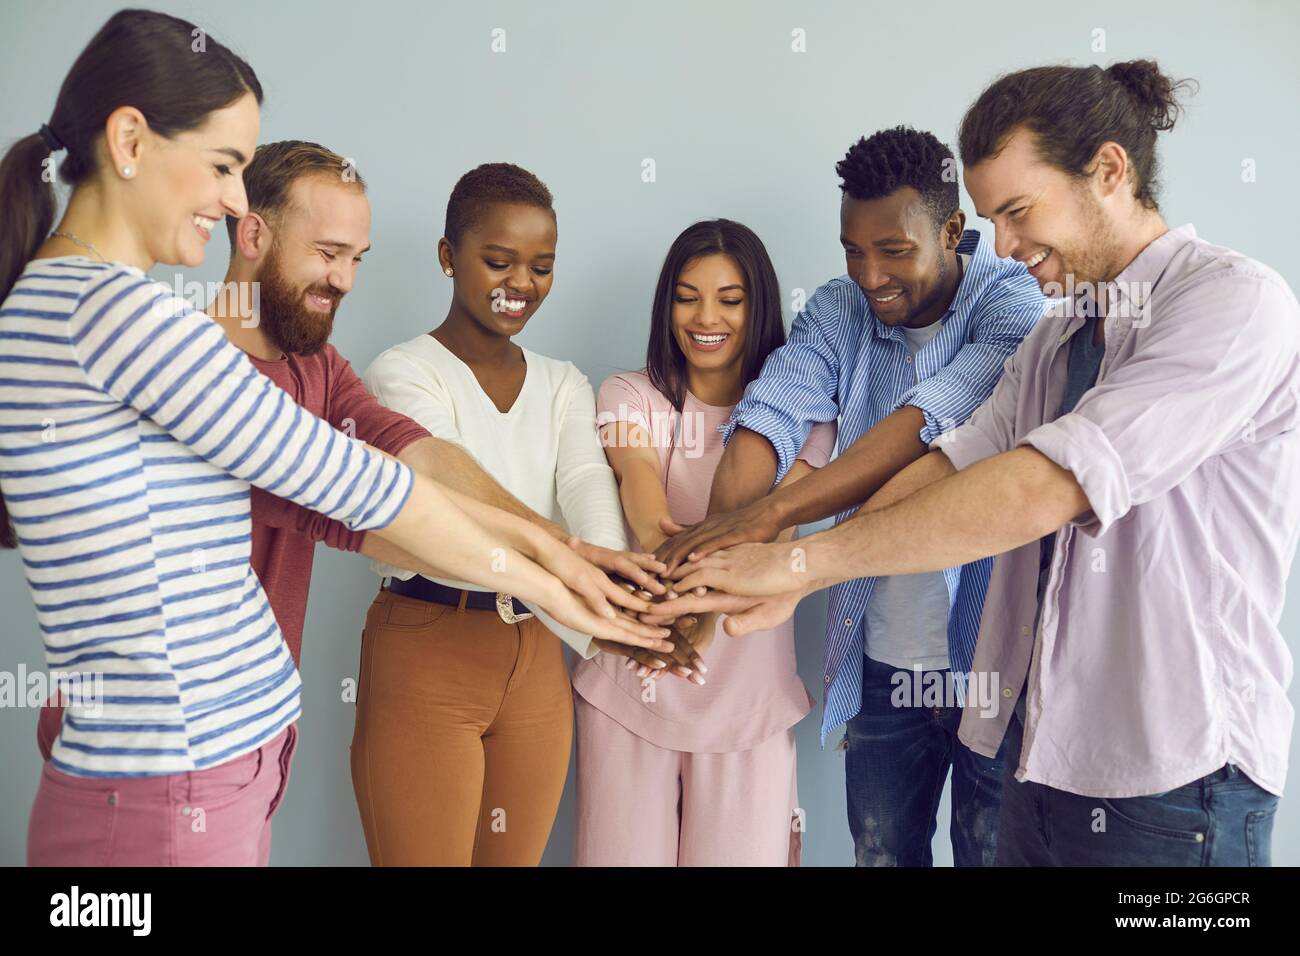 Ein Team von multinationalen Freunden, Studenten oder Kollegen faltet die Arme, was ihre Einheit symbolisiert. Stockfoto